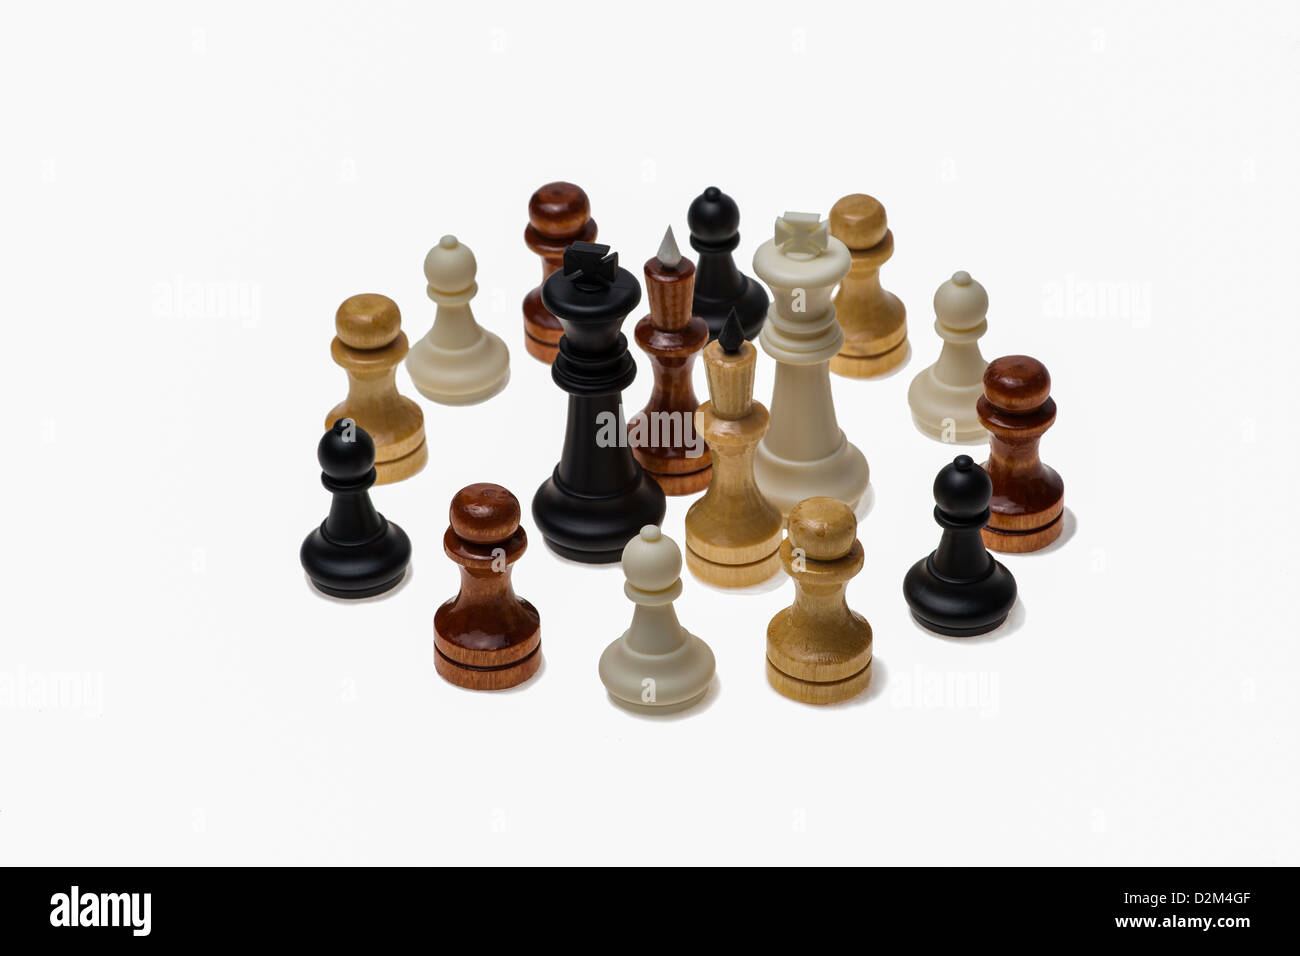 UBUNTU - die Einheit des Volkes. Vier Schach-Könige der schwarzen, weißen, gelben und braunen Farbe umgeben von Figuren der gleichen Farbe, Stockfoto